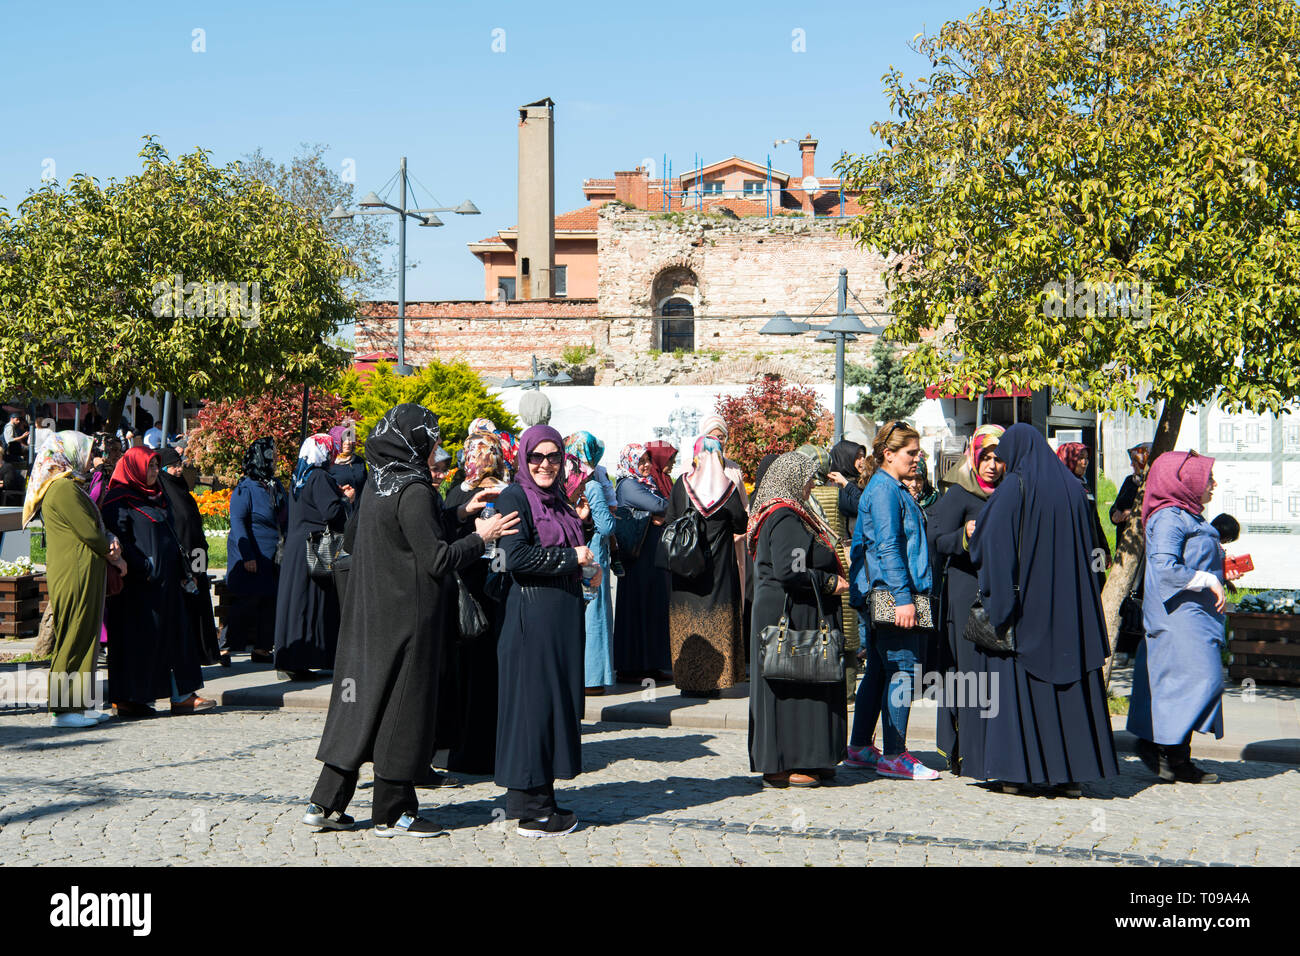 Türkei, Istanbul, Sultanahmet, Yerebatan Cad., Frauen am Sultanahmet Haveran Ristorante im Park Vor den Resten der ehemaligen Lala Hayrettin Moschee Foto Stock